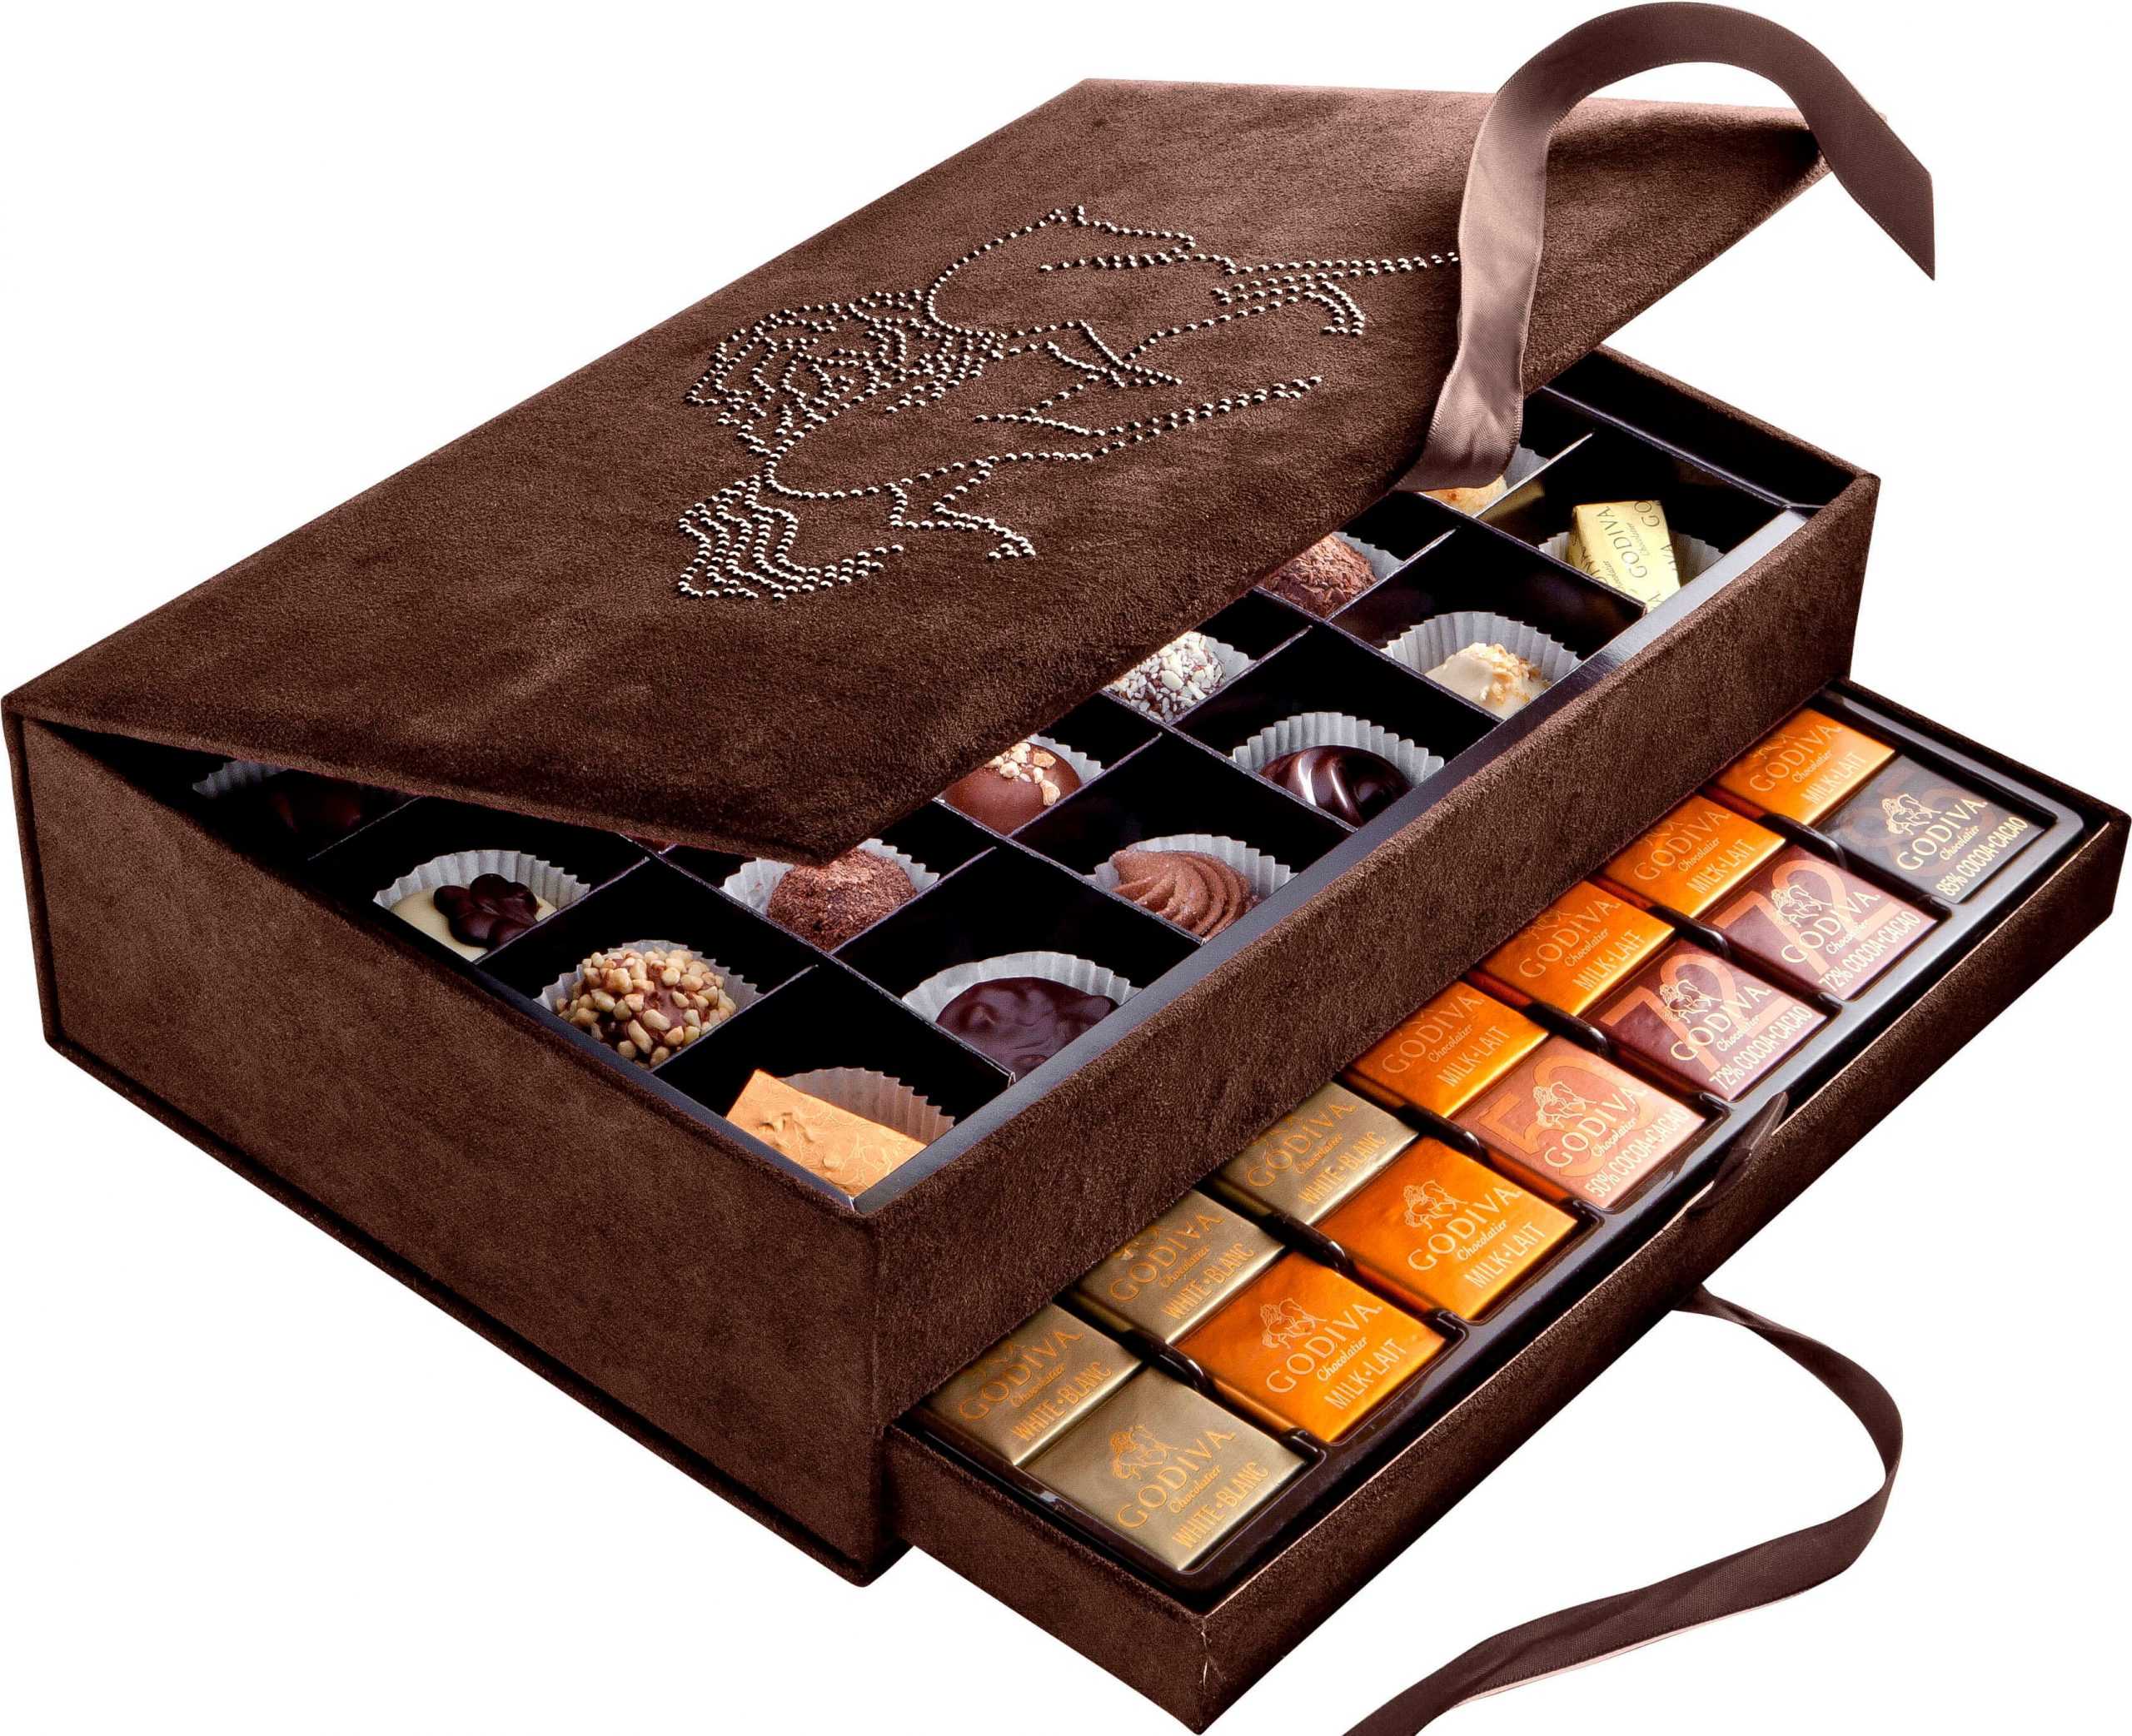 Шоколаде великие. Эксклюзивный шоколад. Коробка конфет Godiva. Exclusive шоколад. Презент шоколадный 130 г.